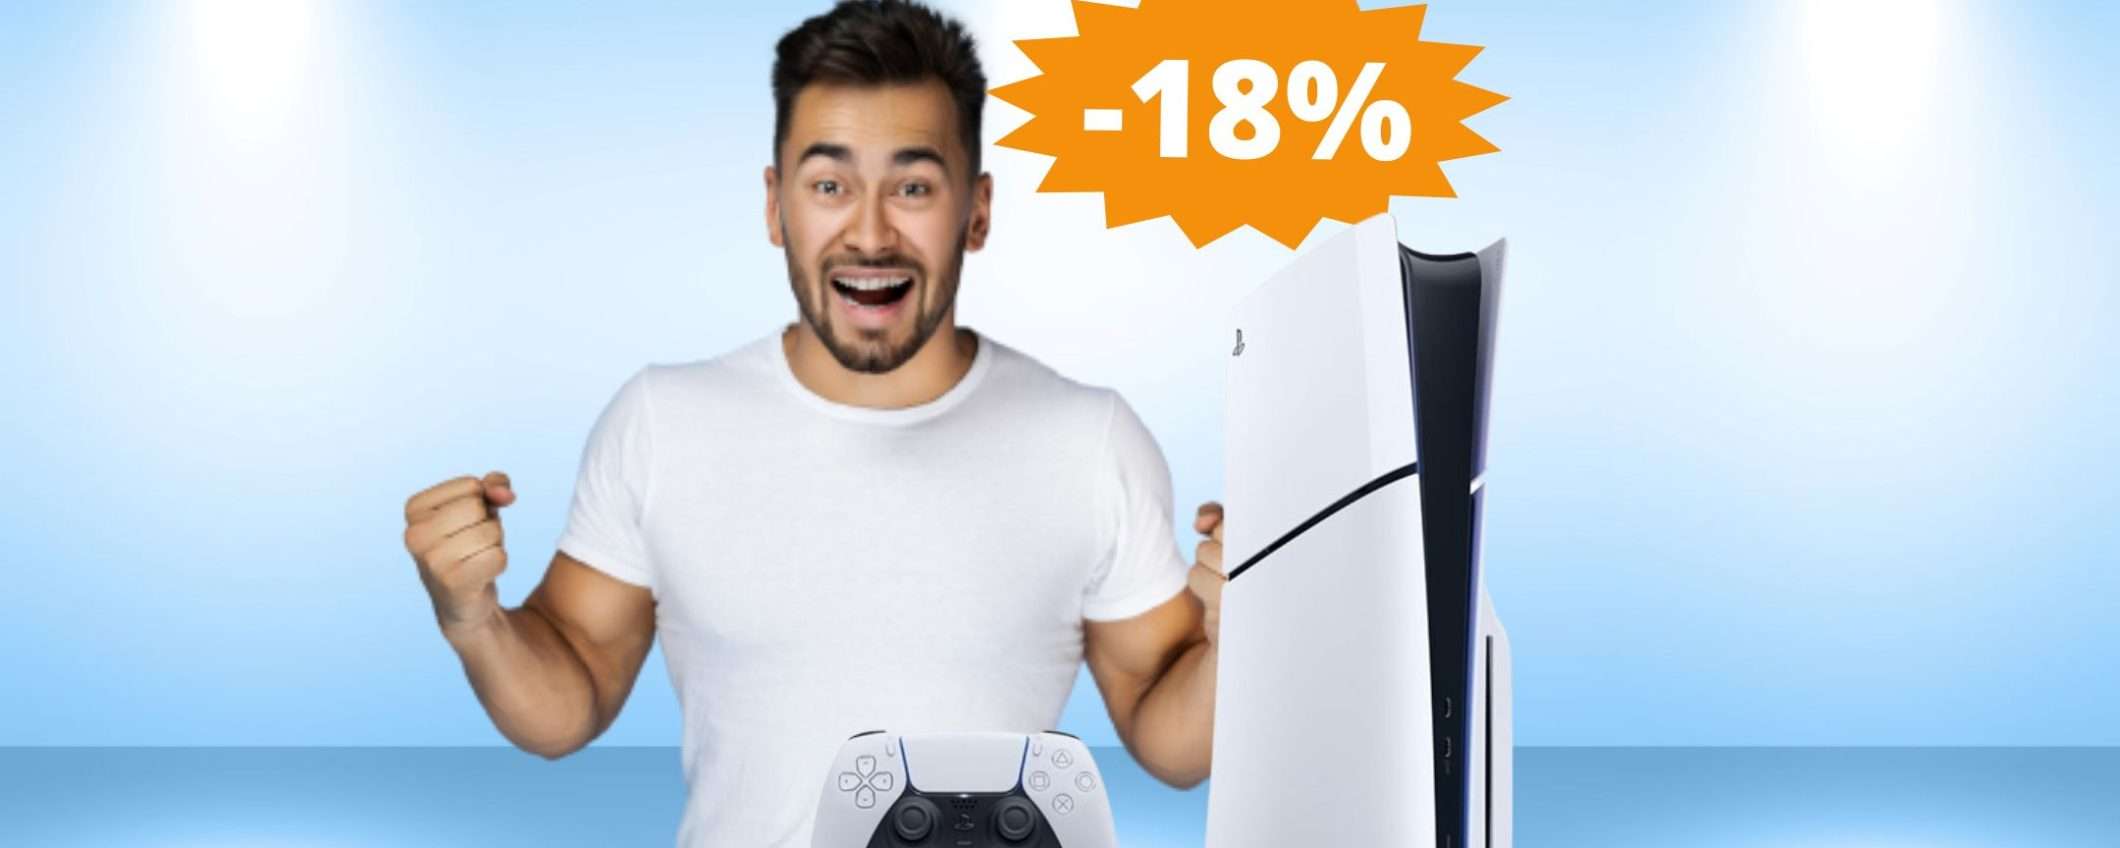 PlayStation 5 Slim: un'OCCASIONE da non perdere (-18%)